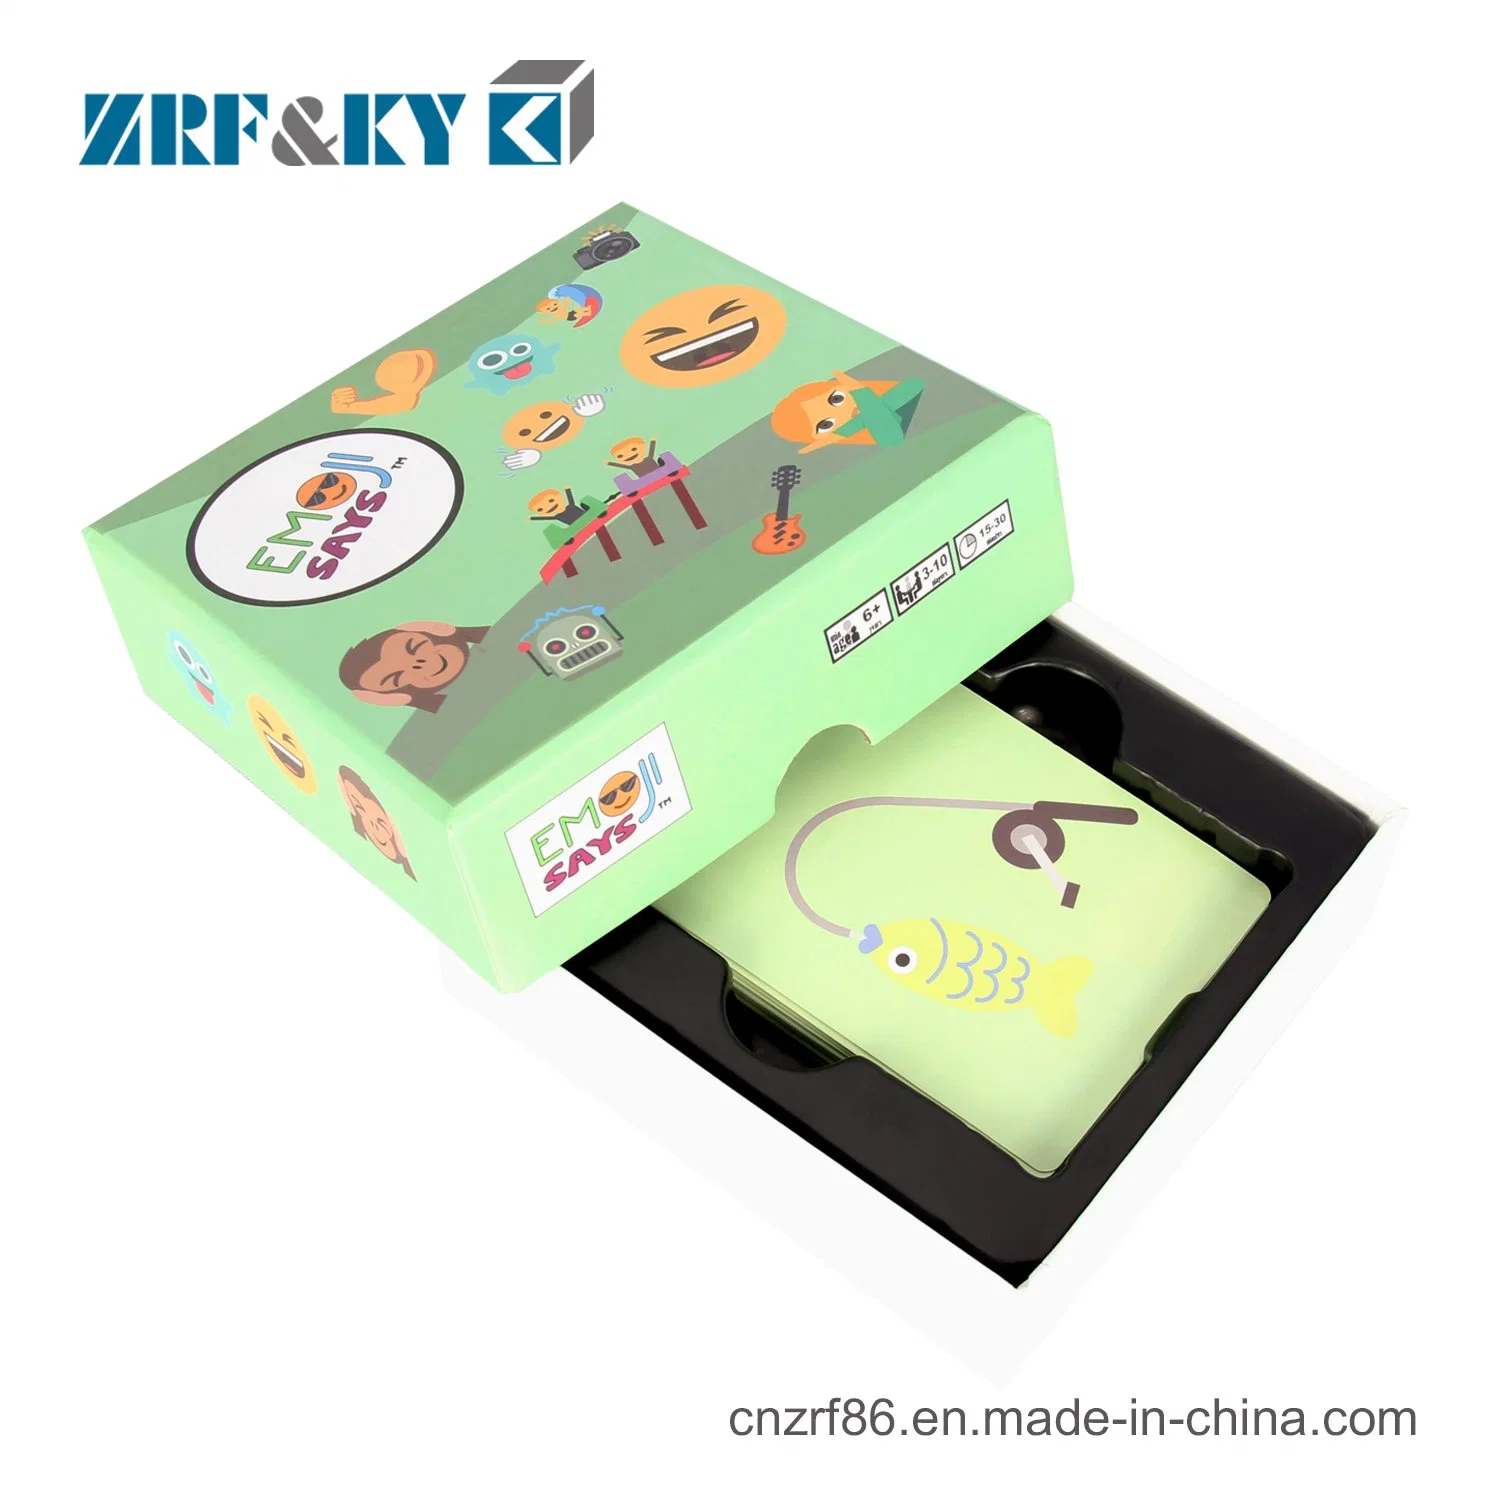 Envases de papel cartón impreso personalizado de Tarjetas de juego juguetes cajas de regalo